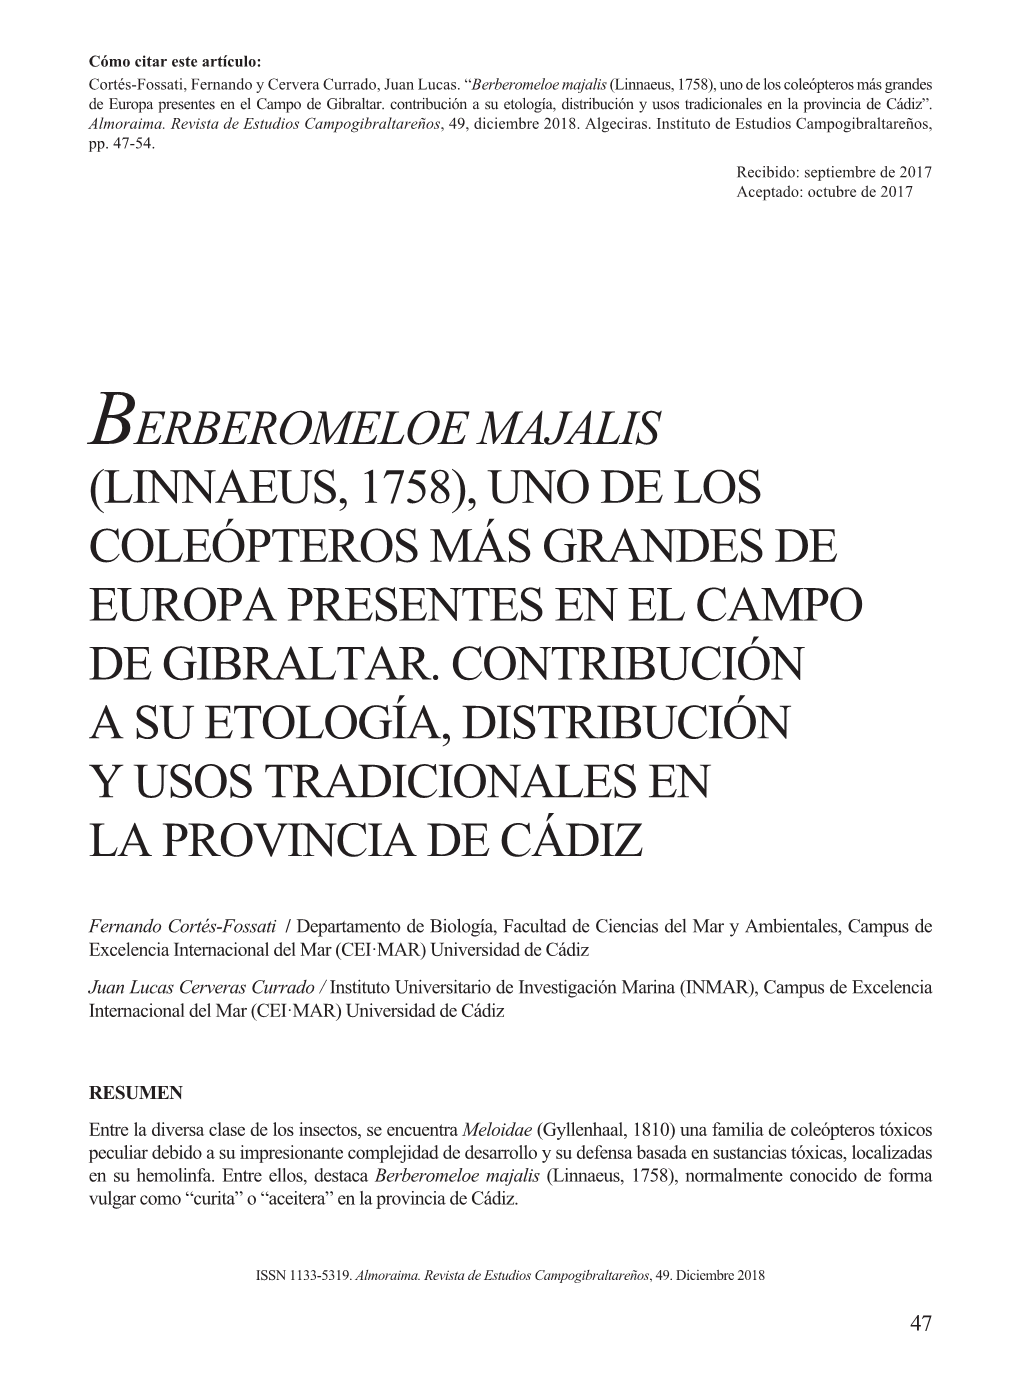 Berberomeloe Majalis (Linnaeus, 1758), Uno De Los Coleópteros Más Grandes De Europa Presentes En El Campo De Gibraltar